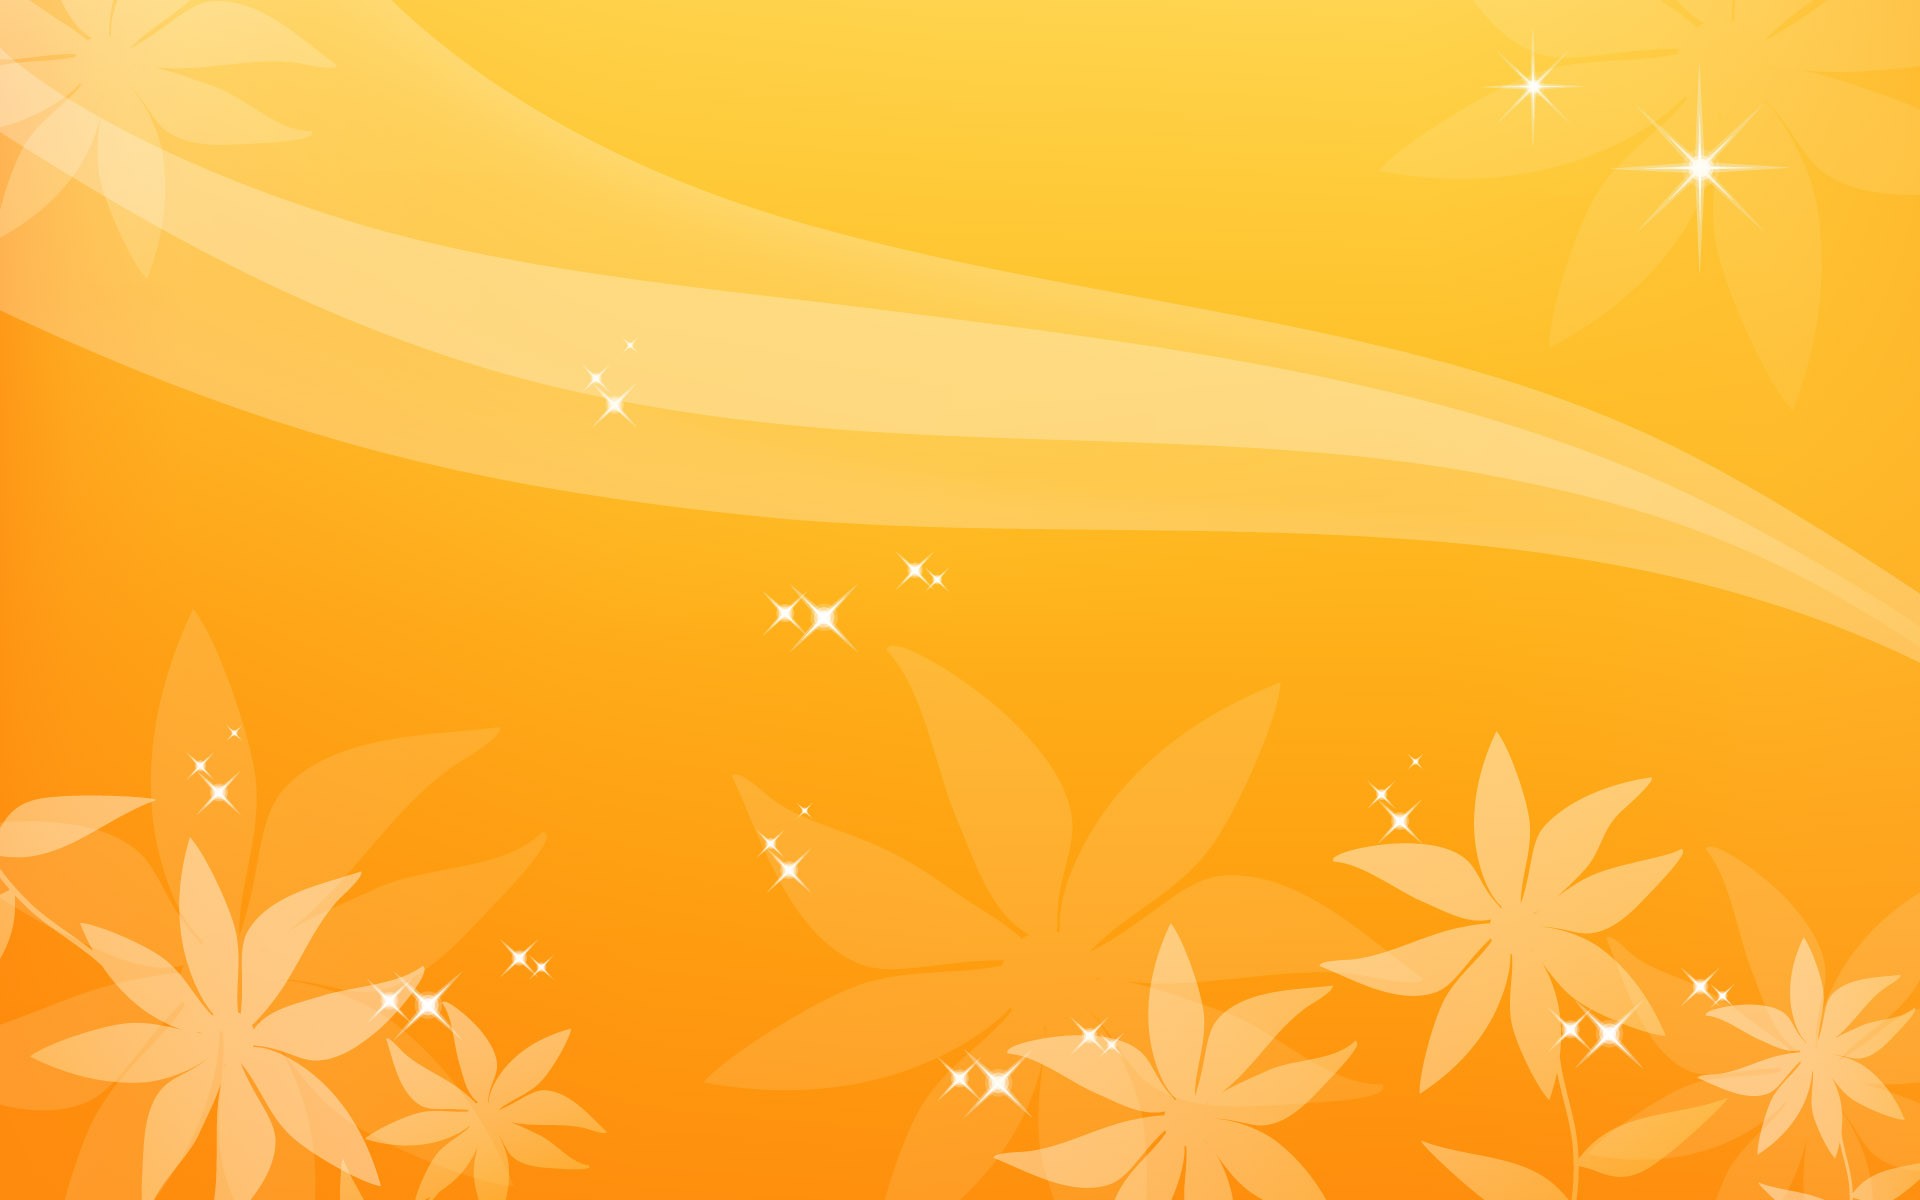 Starry Flashes On Orange Background Image